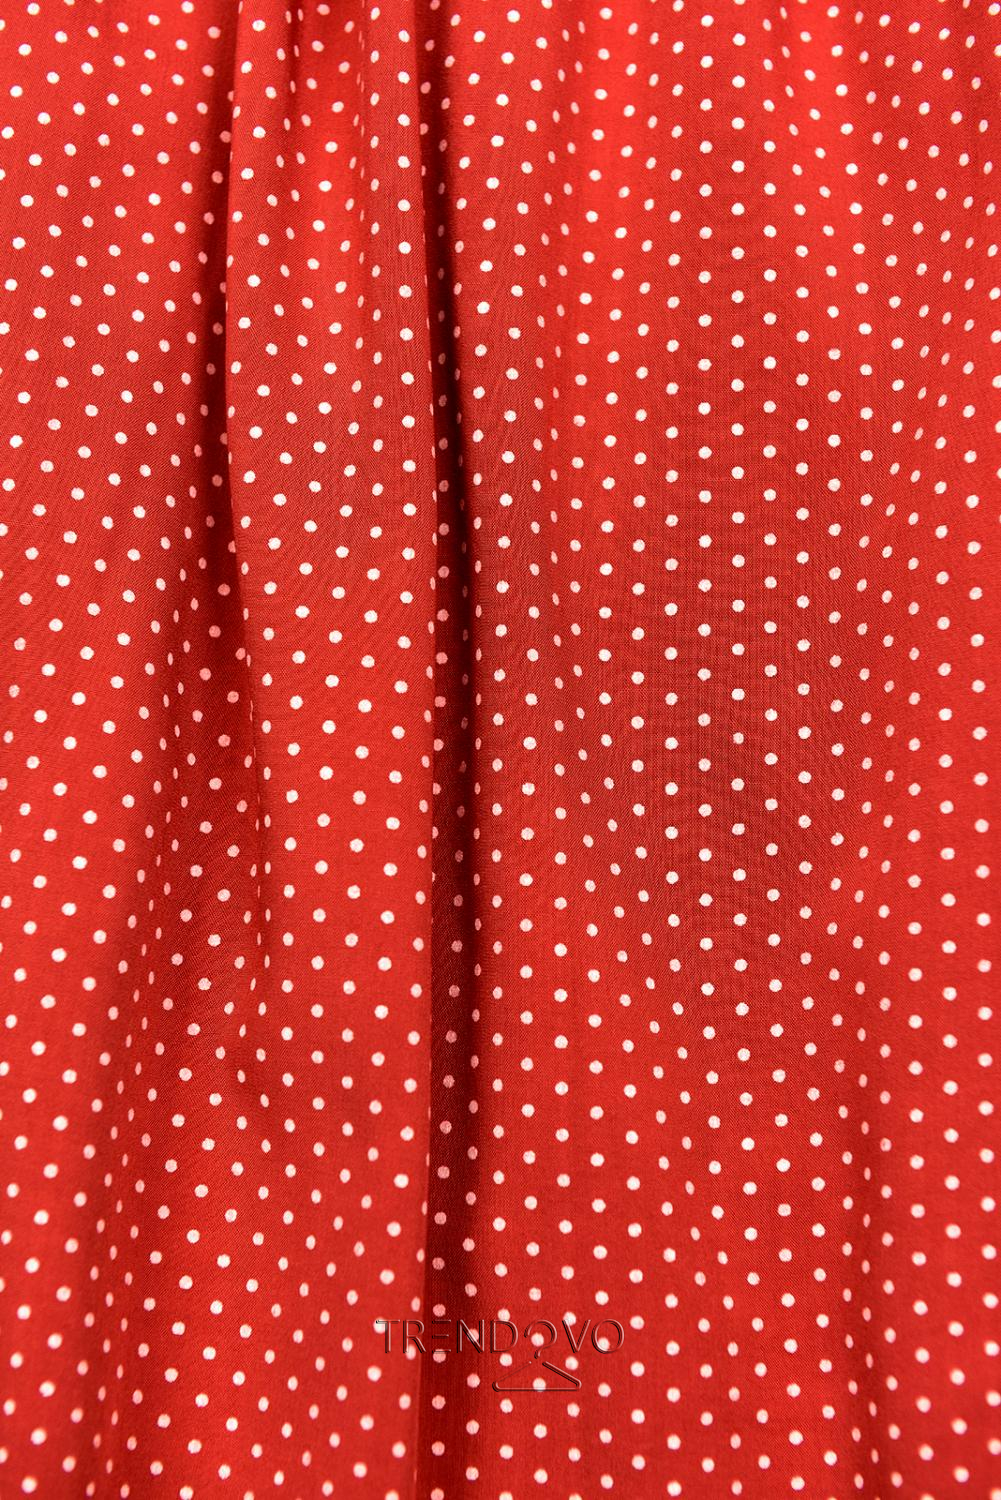 Červené retro puntíkované šaty s mašlí